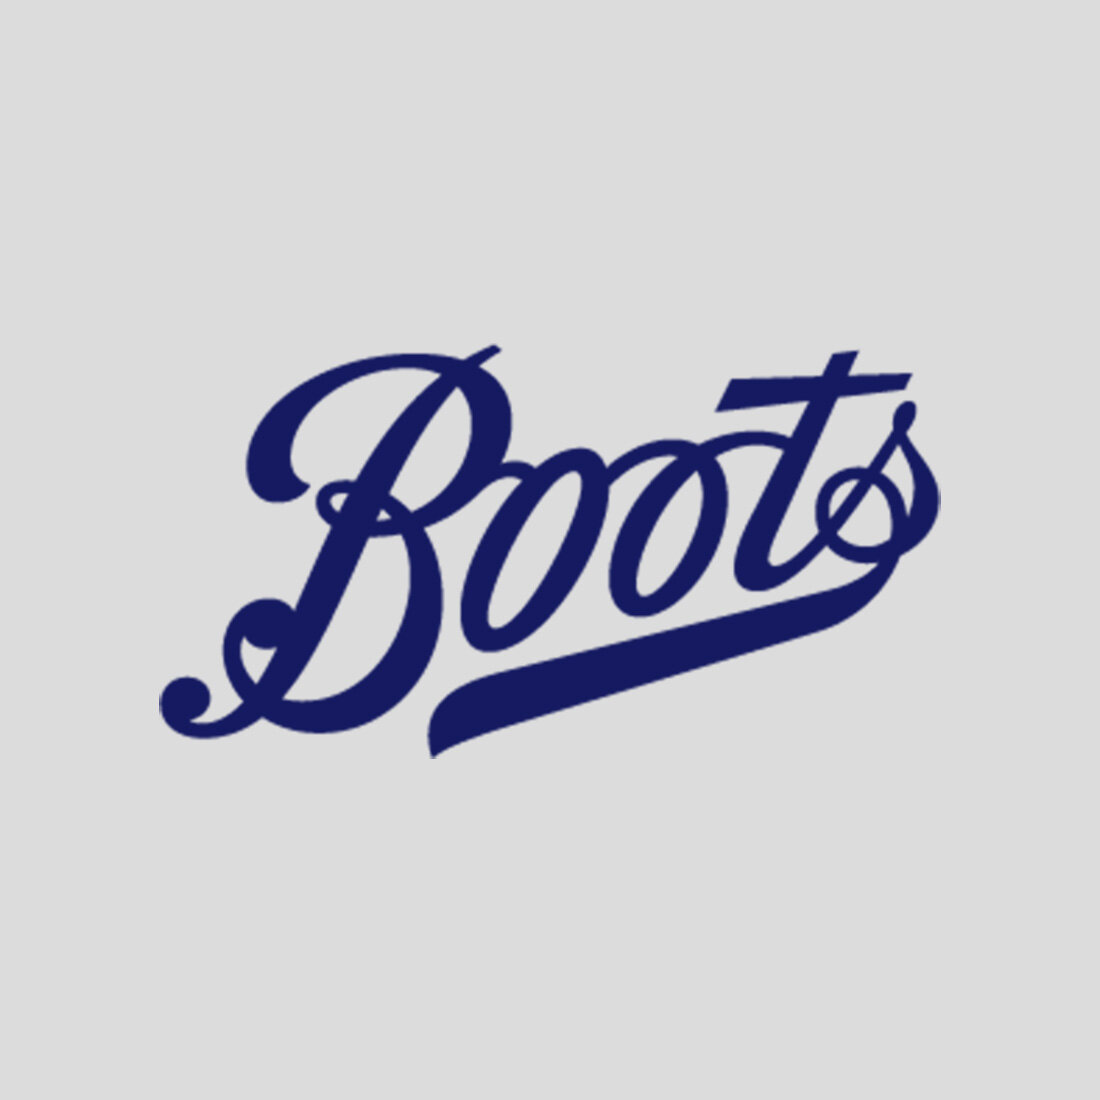 Boots.jpg